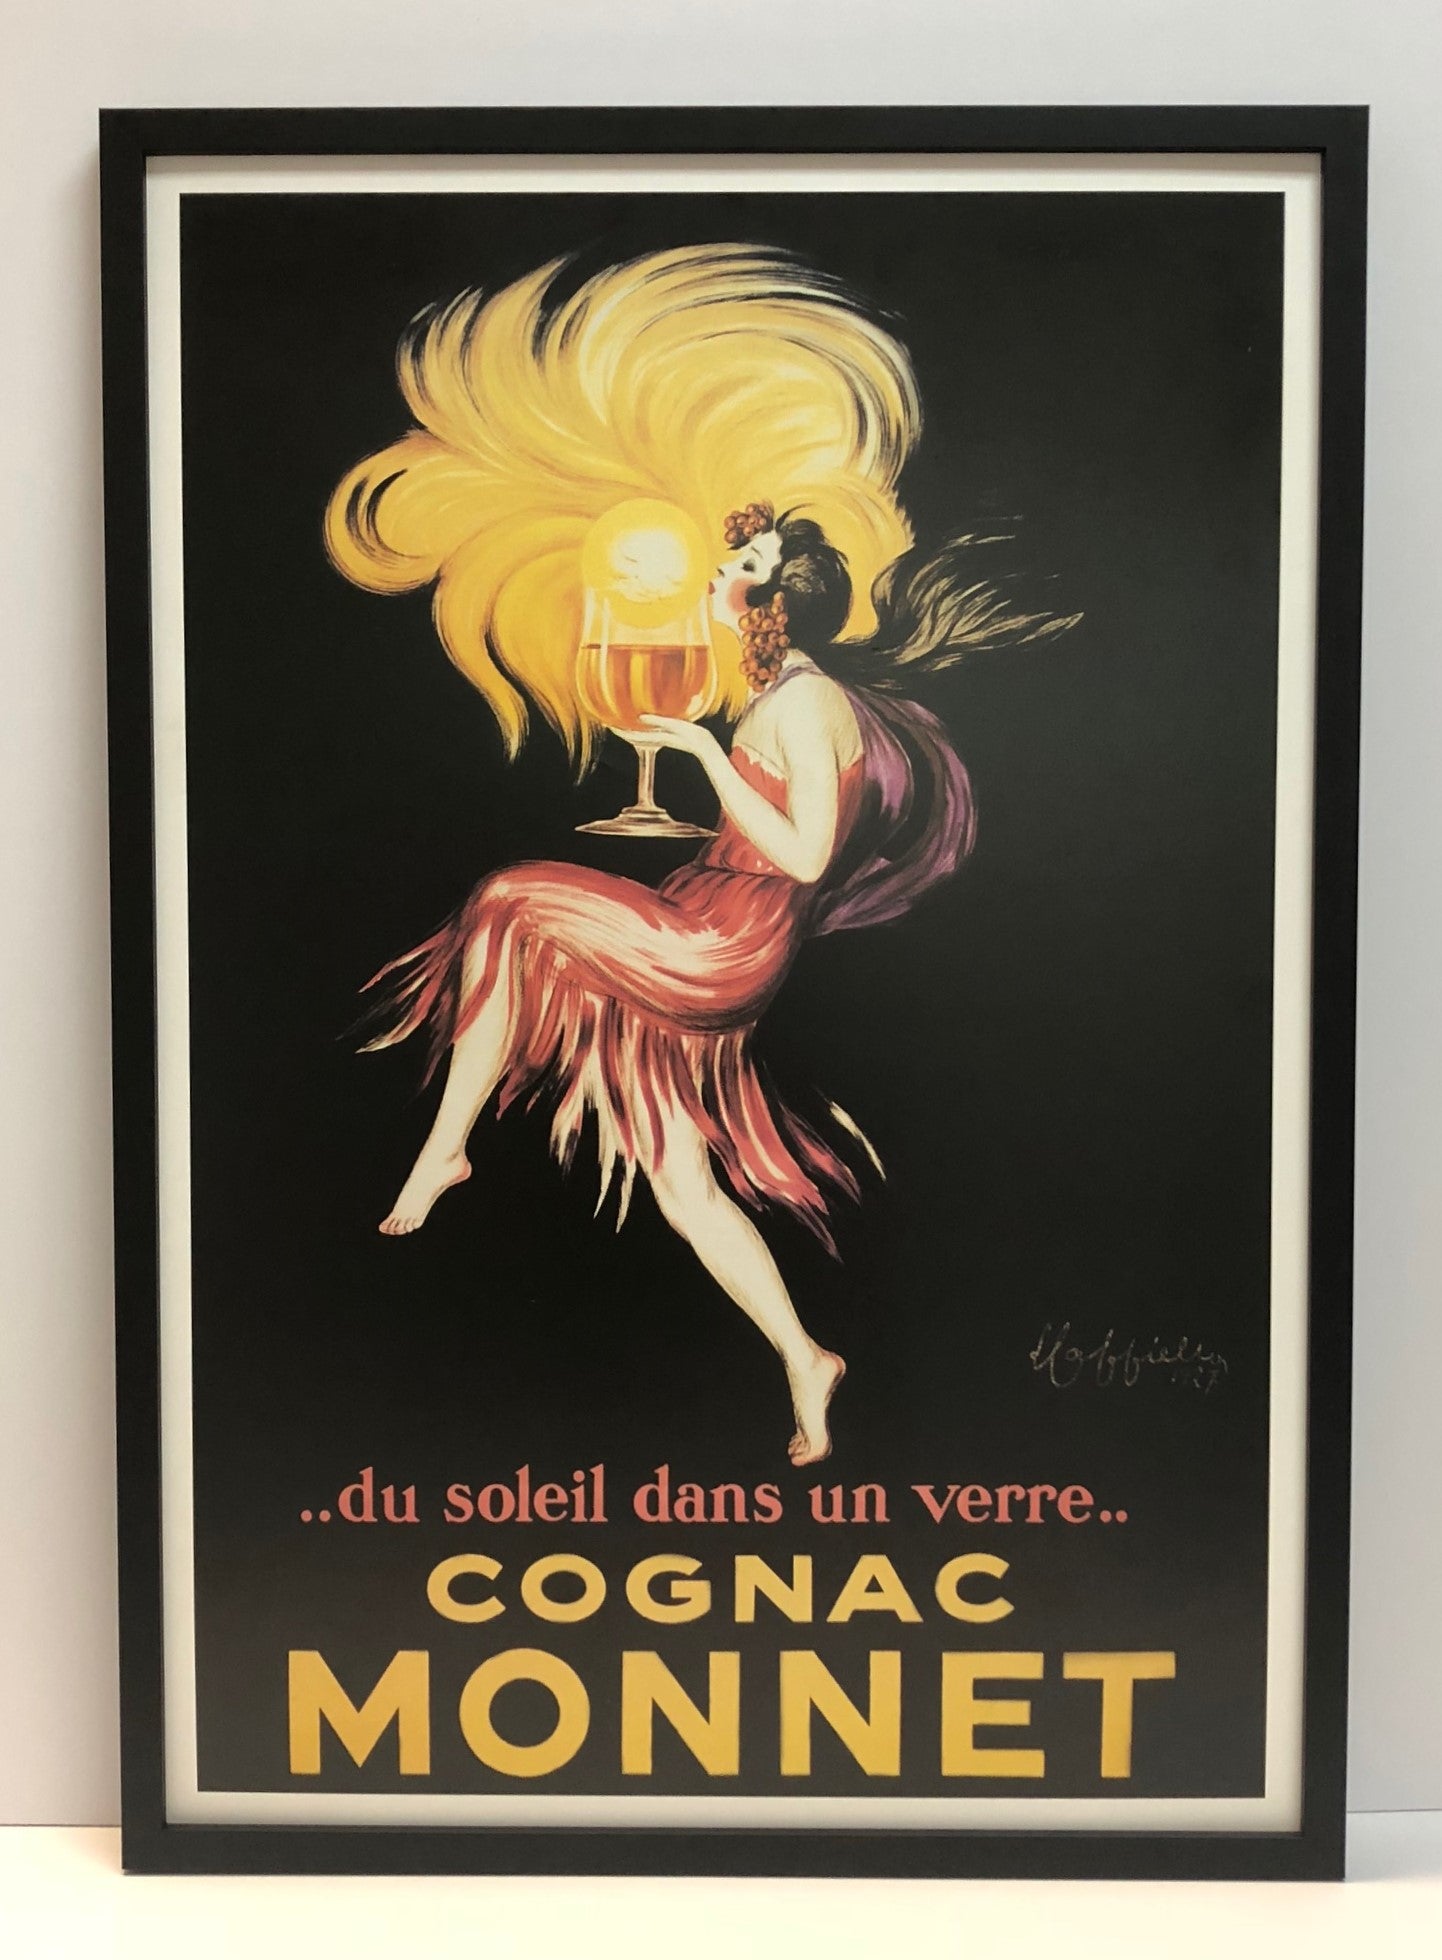 Vintage Poster "Cognac Monnet"